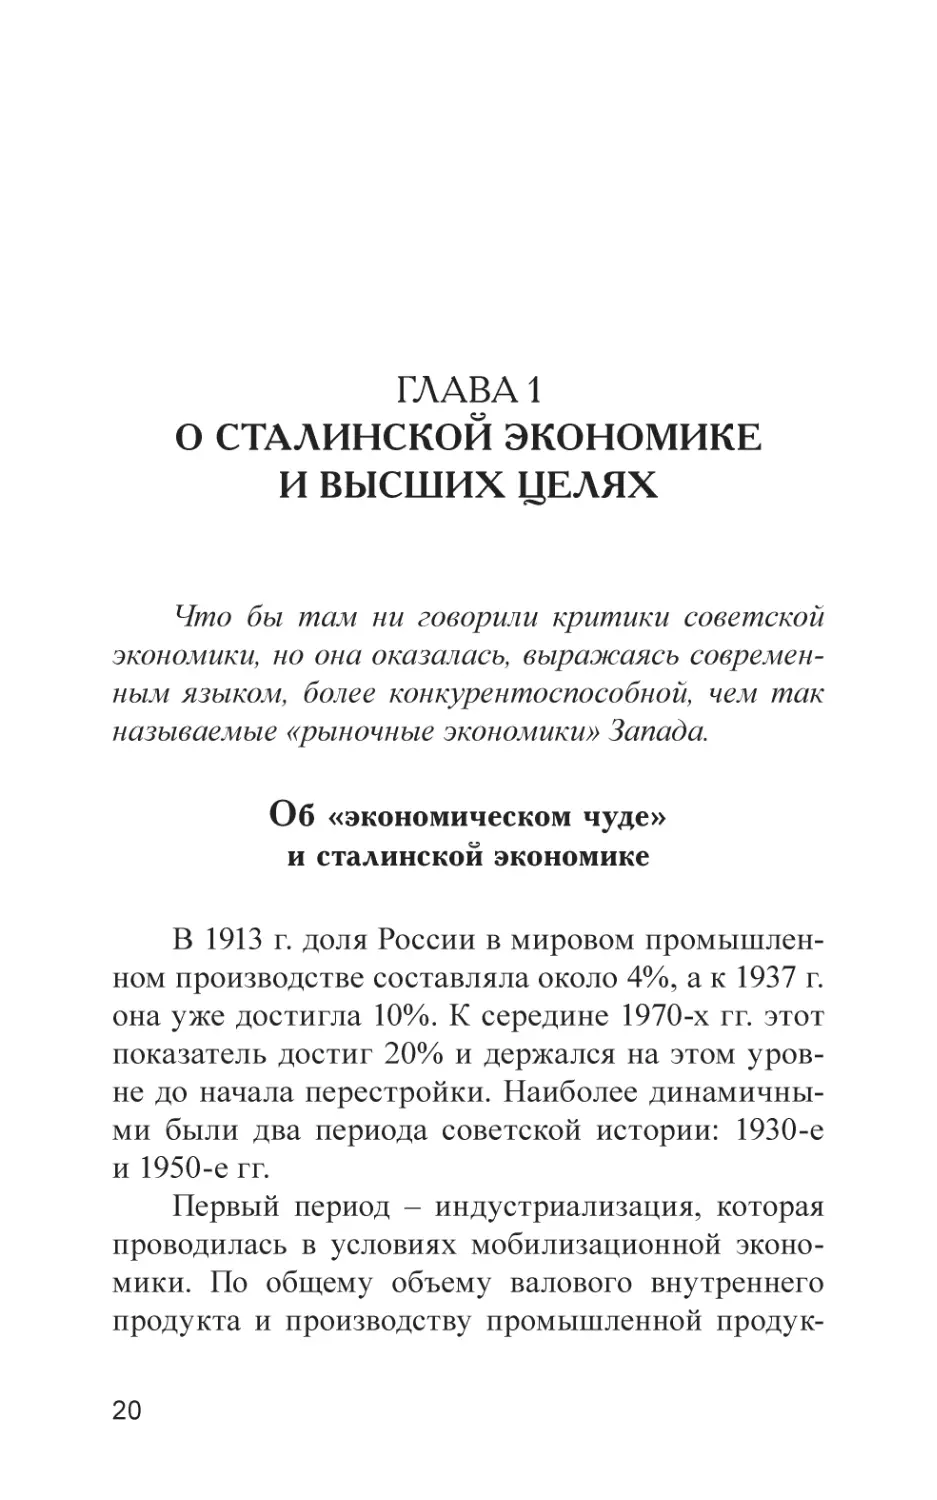 Глава 1. О сталинской экономике и высших целях
Об «экономическом чуде» и сталинской экономике